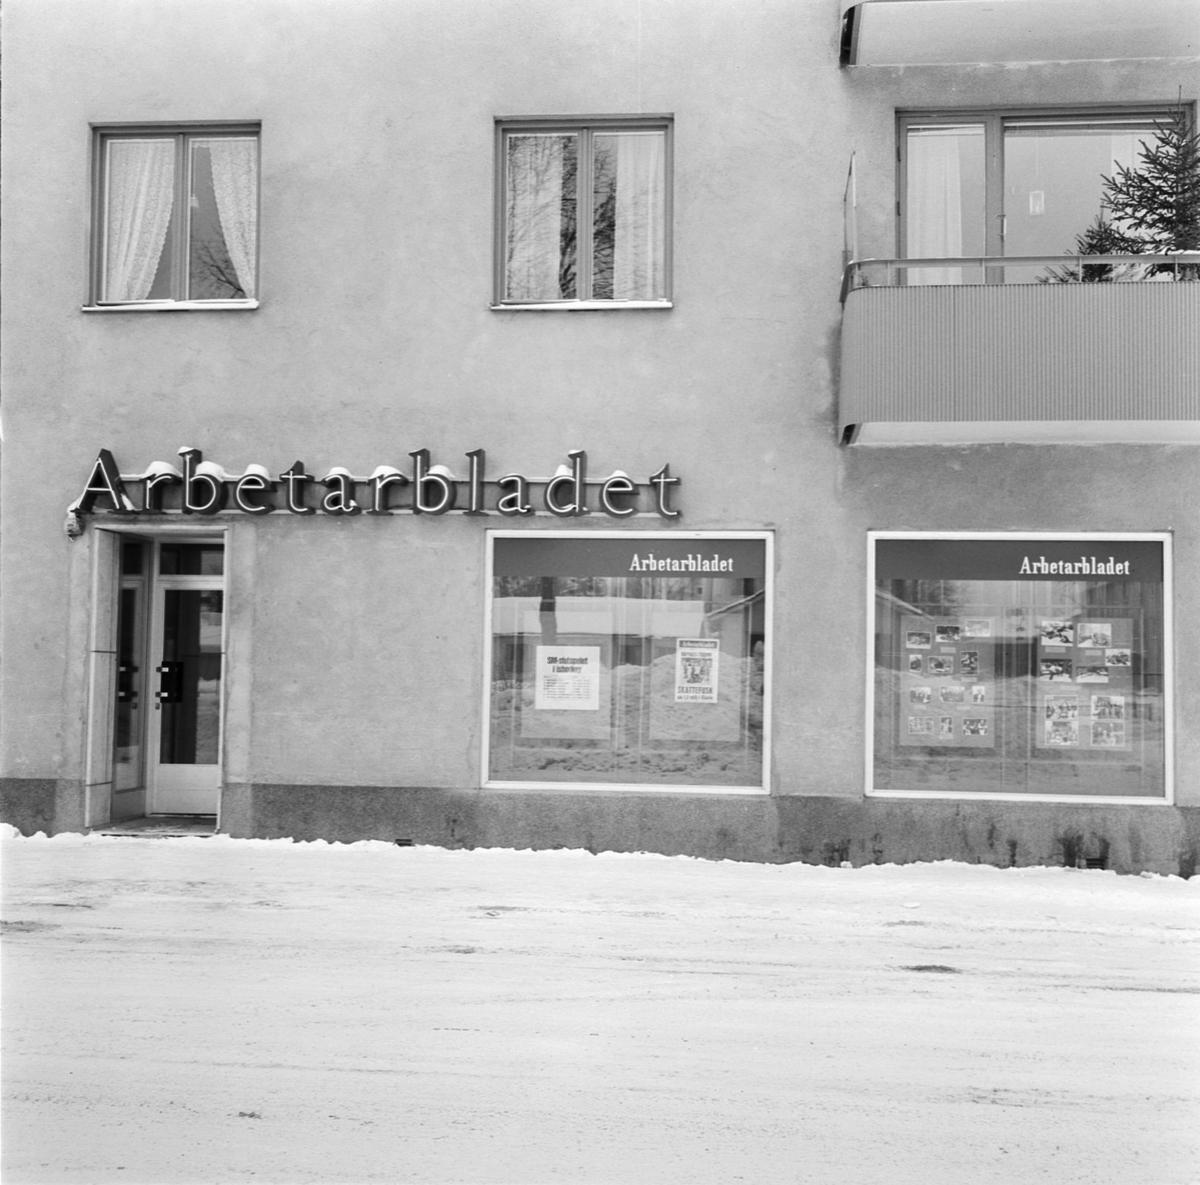 Arbetarbladets tidningsredaktion, Södra Esplanaden 7, Tierp, Uppland 1970